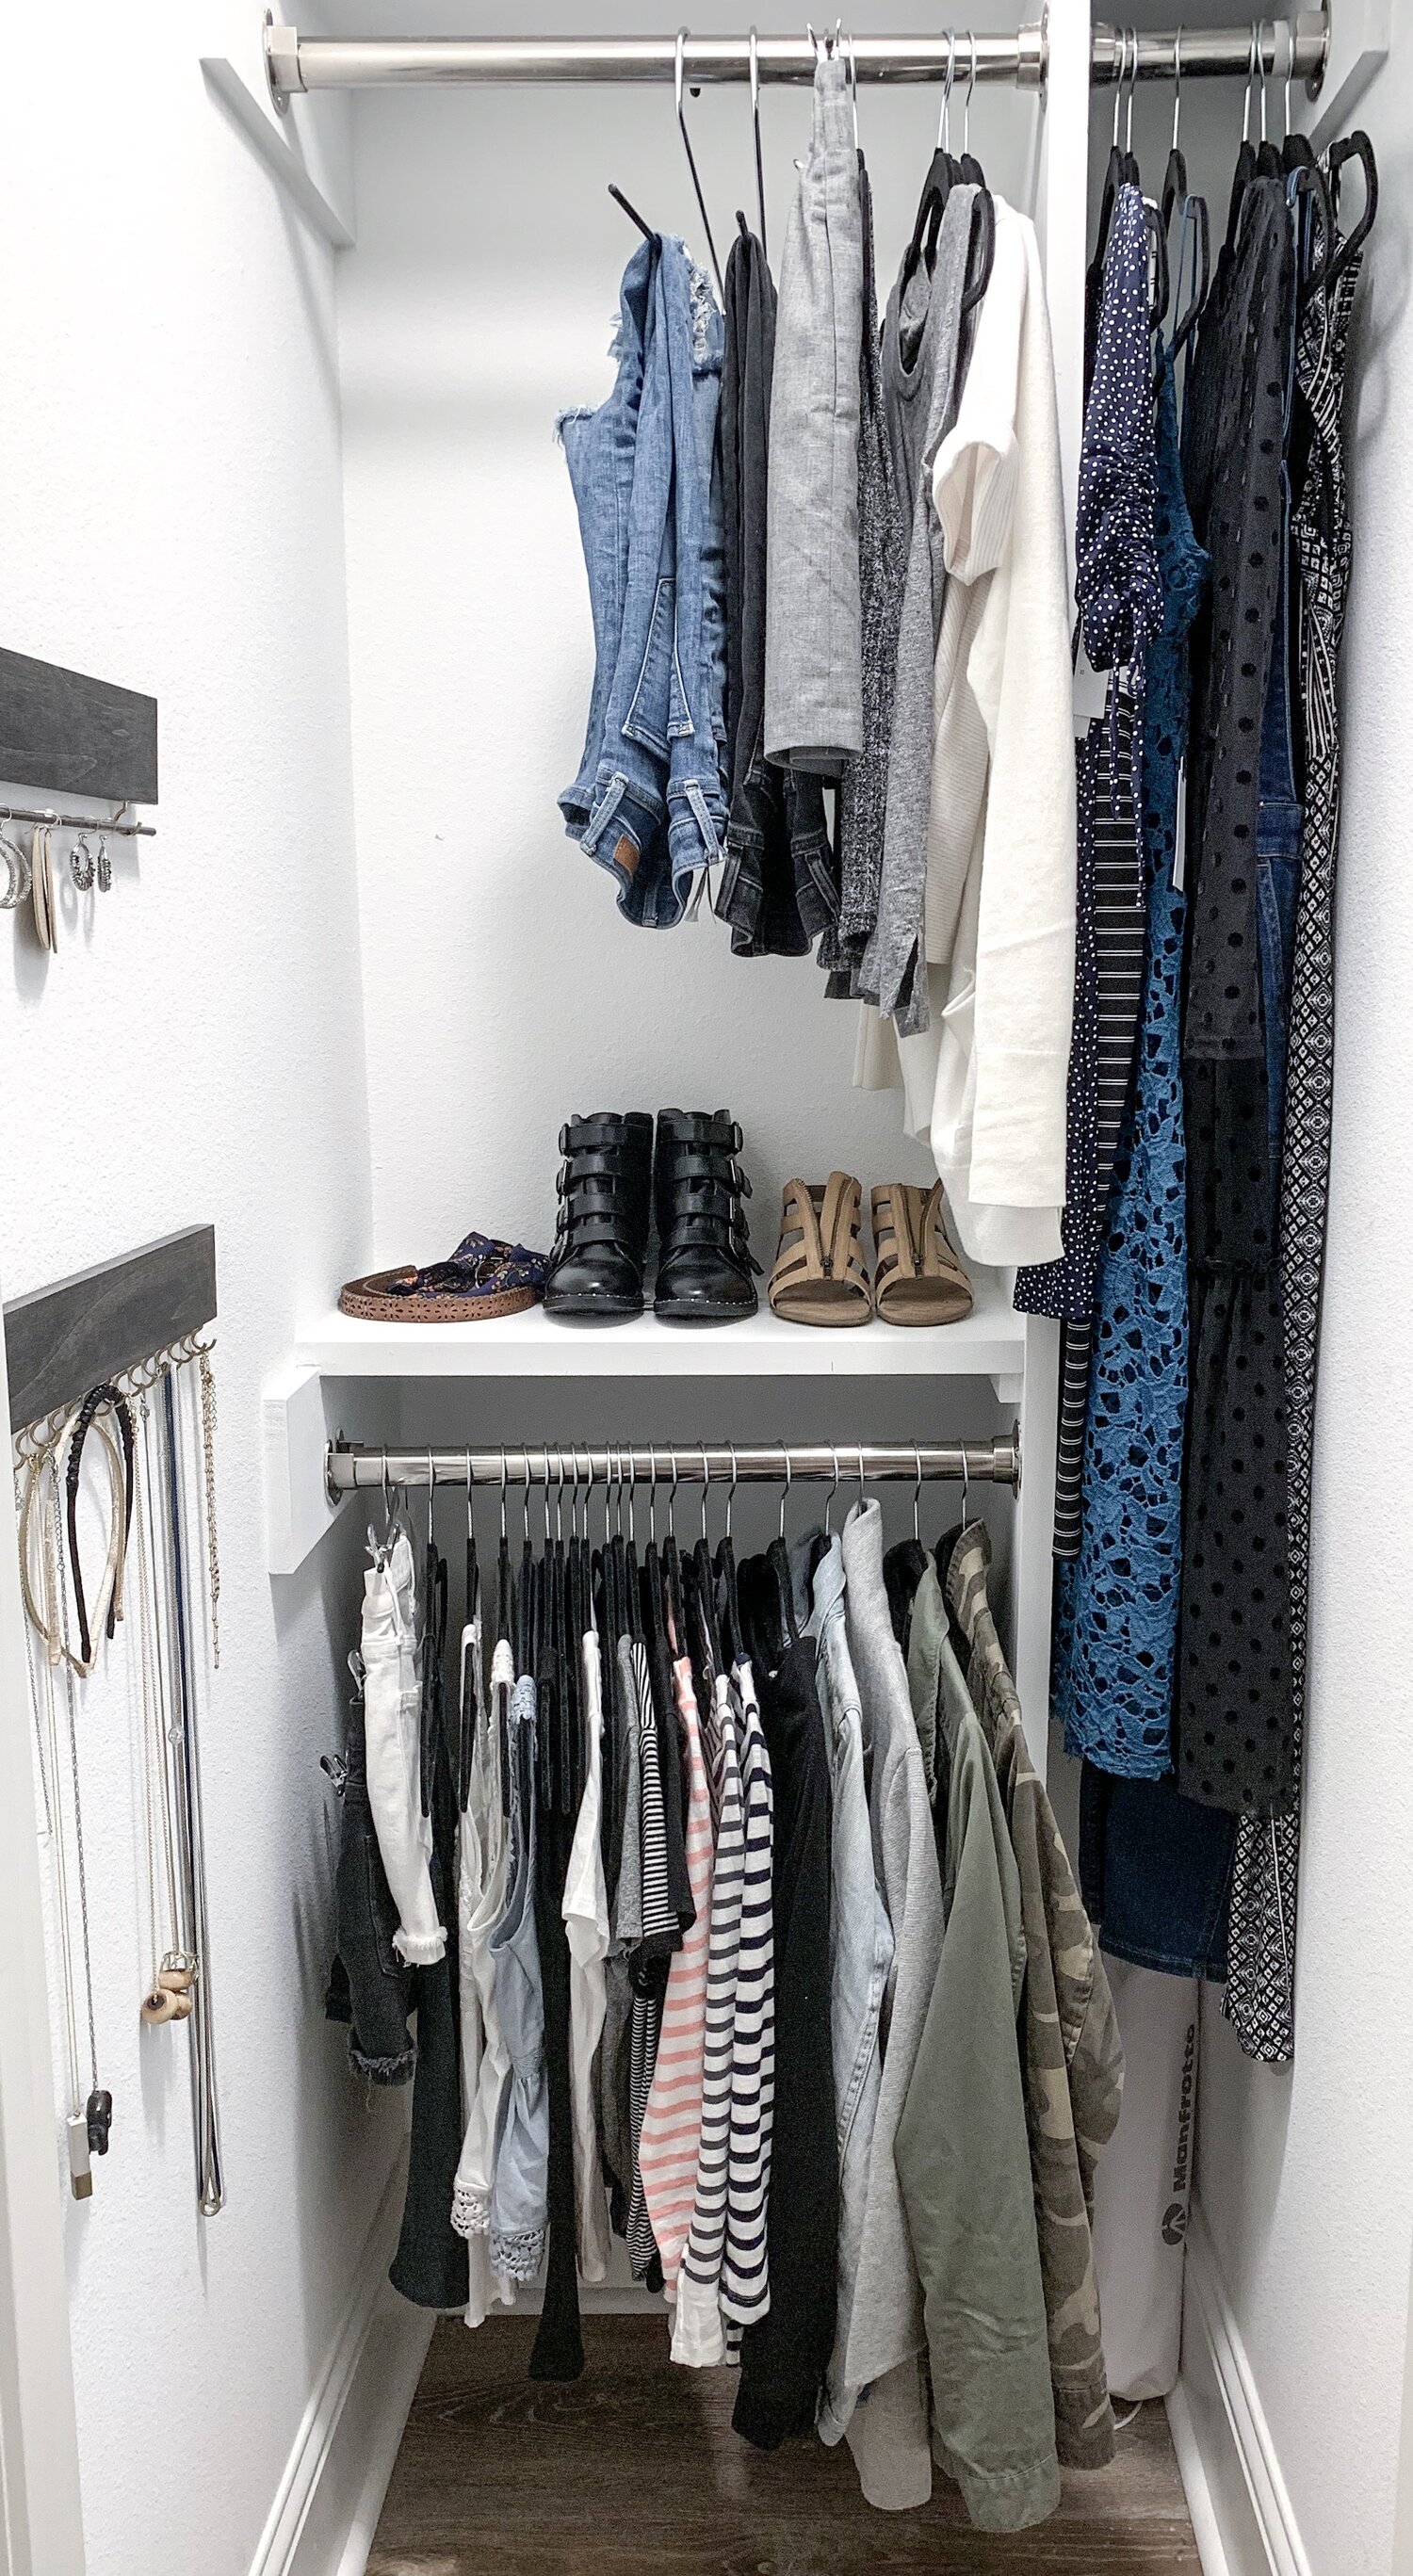 Small Closet Ideas: How to Organize a Small Closet